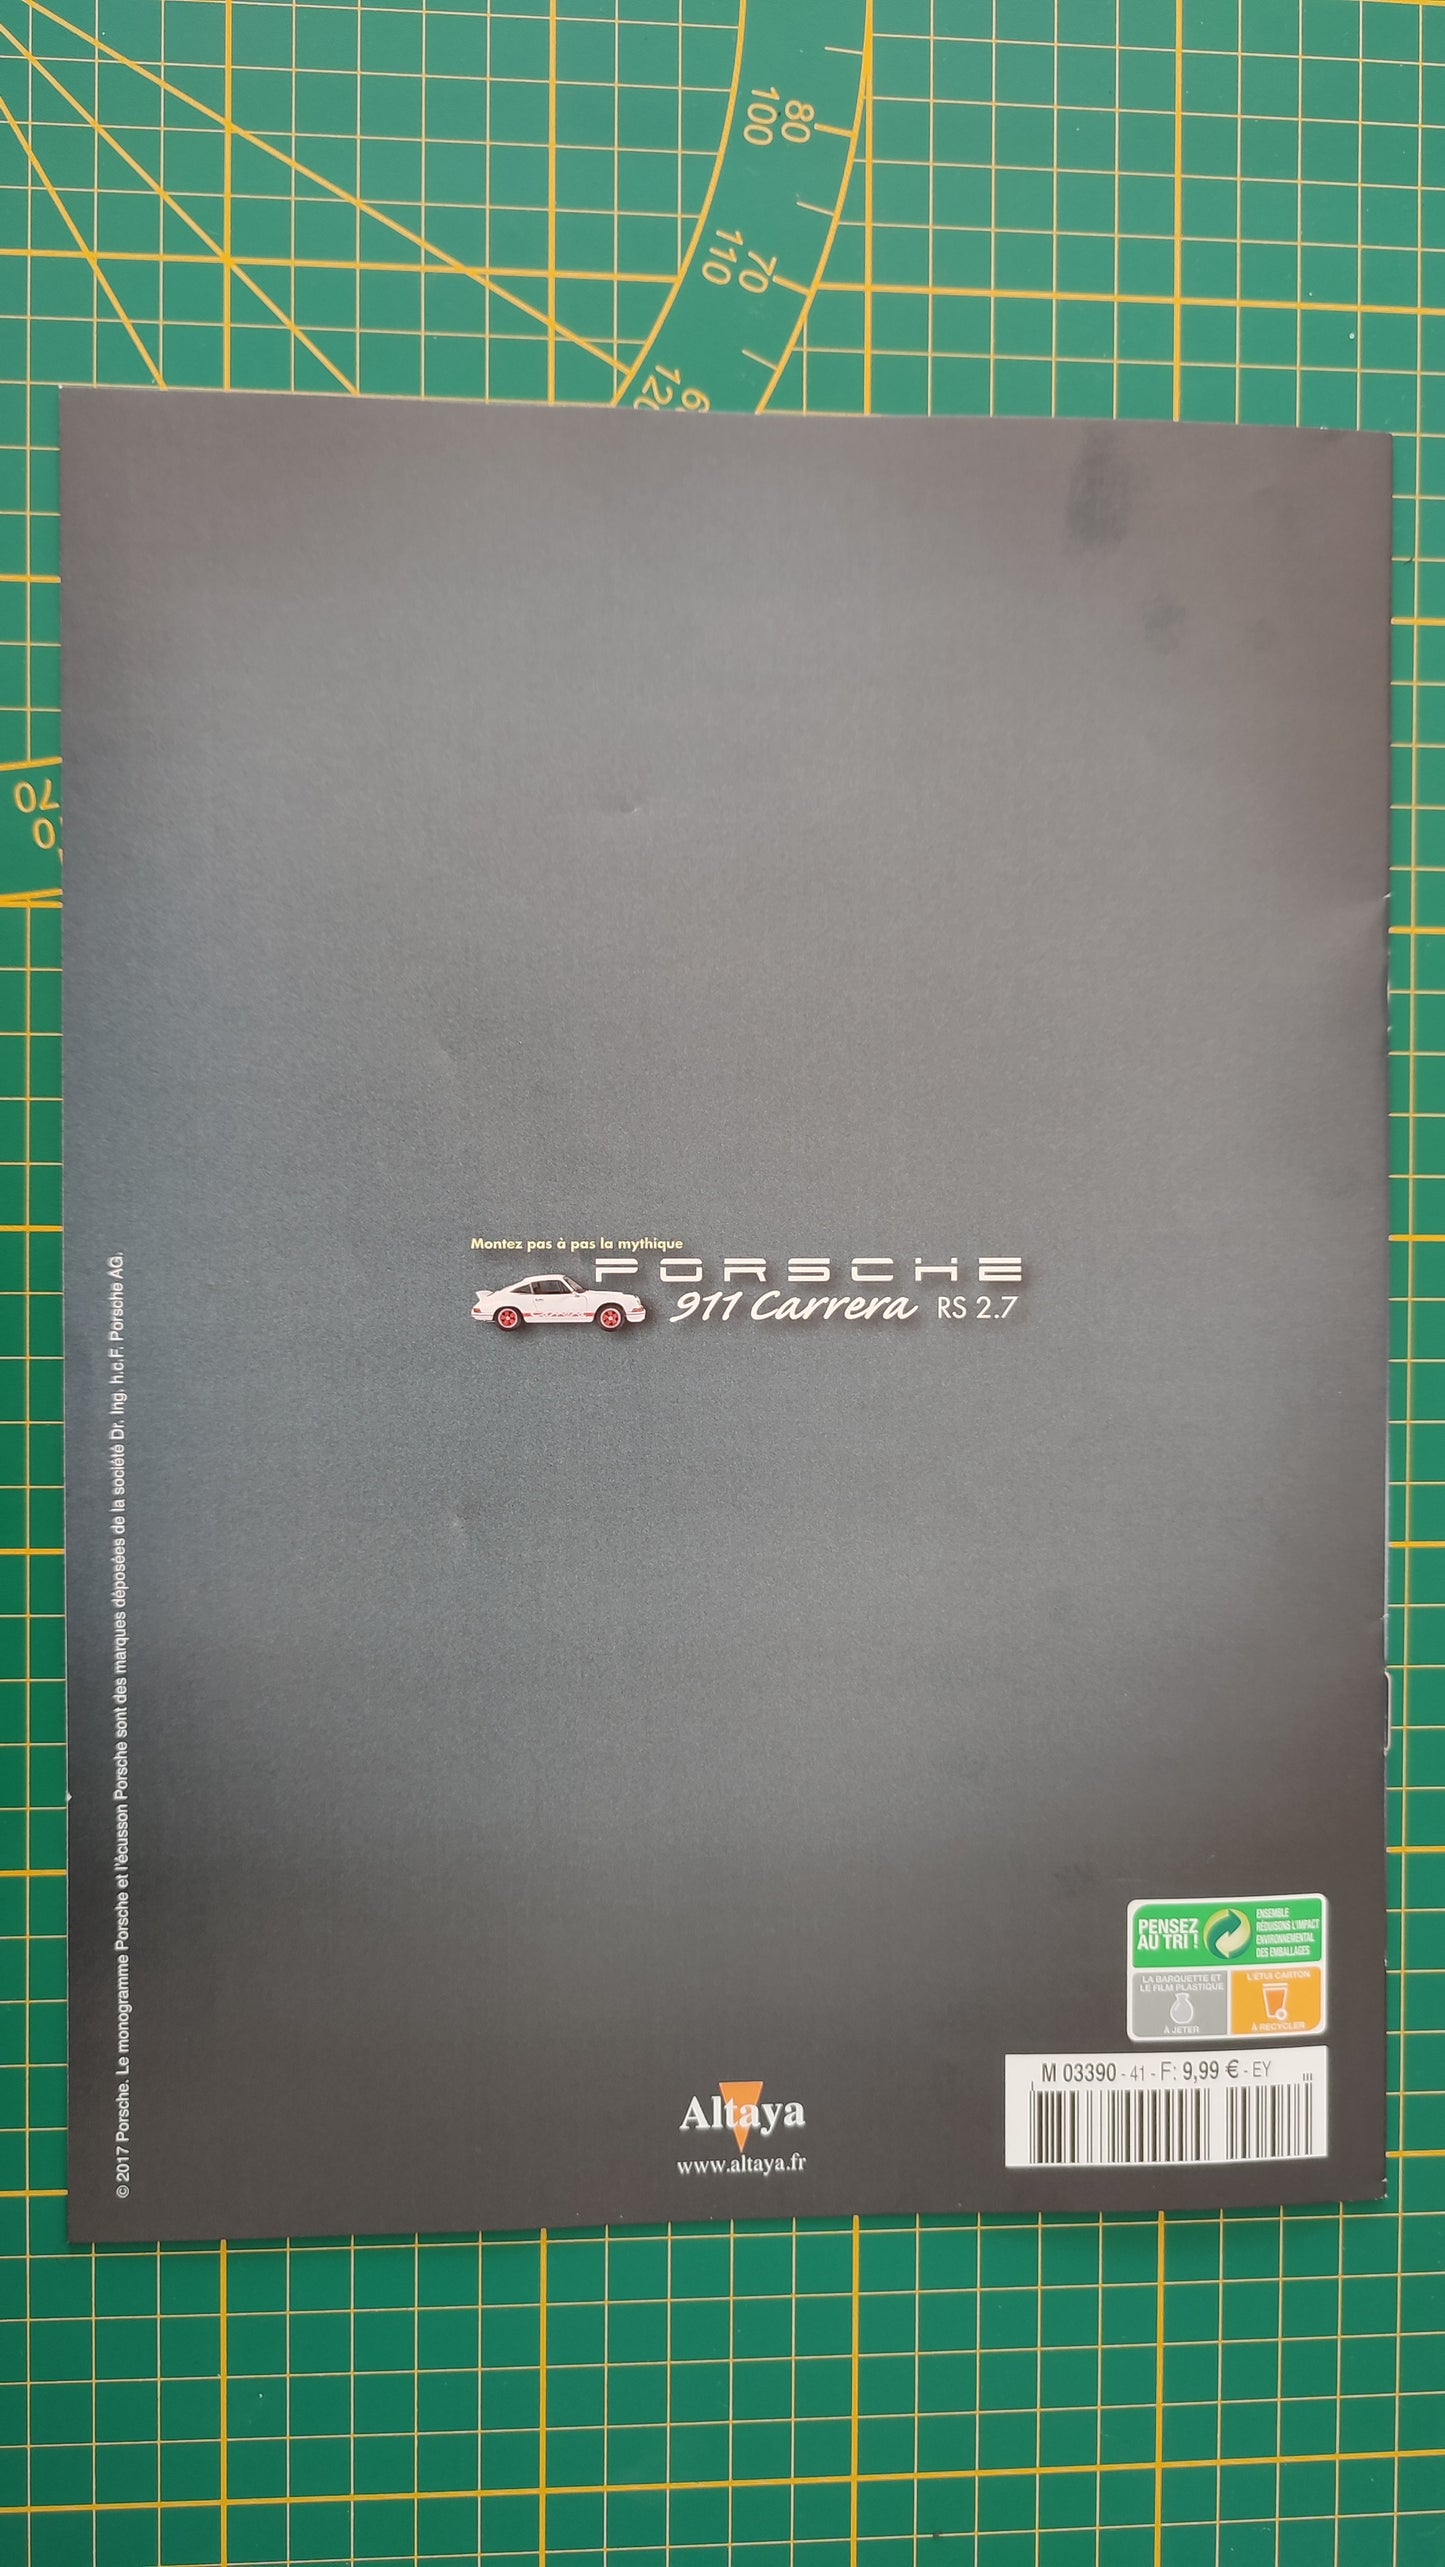 Fascicule seul sans pièce n°41 pièce détachée Porsche 911 Carrera RS 2.7 1/8 1/8ème Altaya #B37